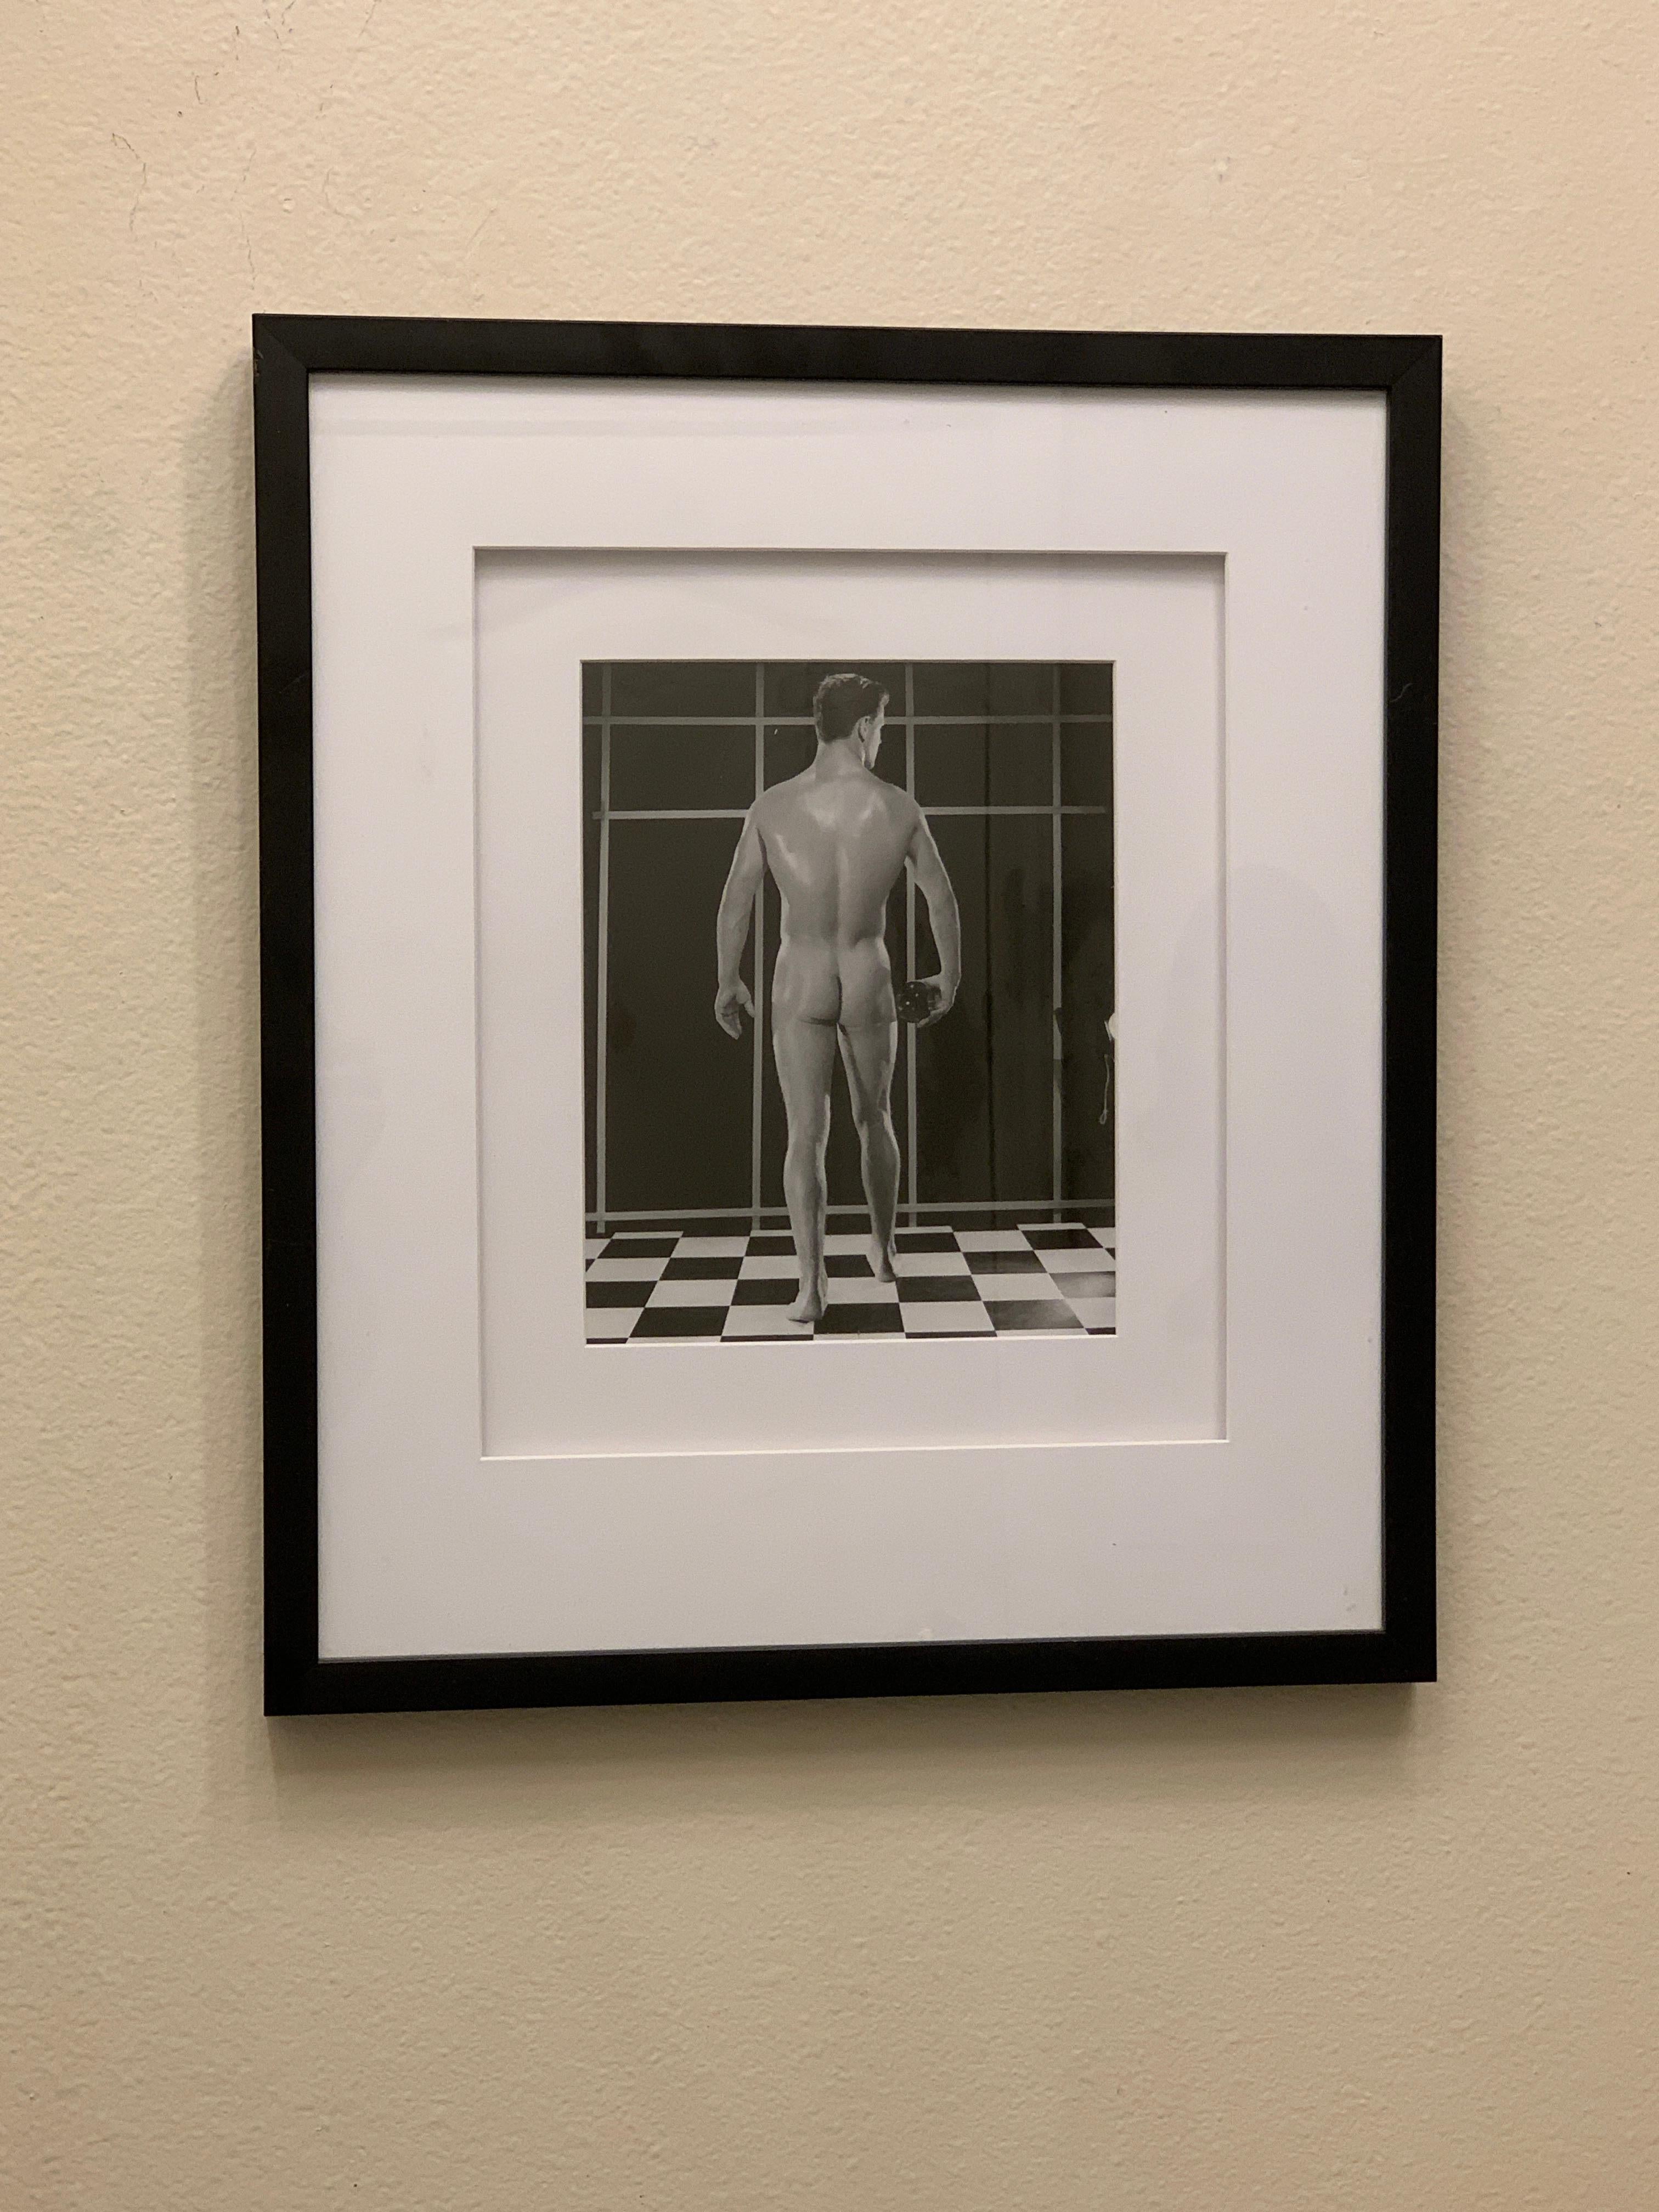 Aus einer bedeutenden, über 25 Jahre alten Sammlung von männlichen Körperbau- und Beefcake-Fotografien stammt ein ikonisches Bild, das Bruce im Studio aufgenommen hat, wobei das Modell auf dem ikonischen Schwarz-Weiß-Boden posiert und seinen